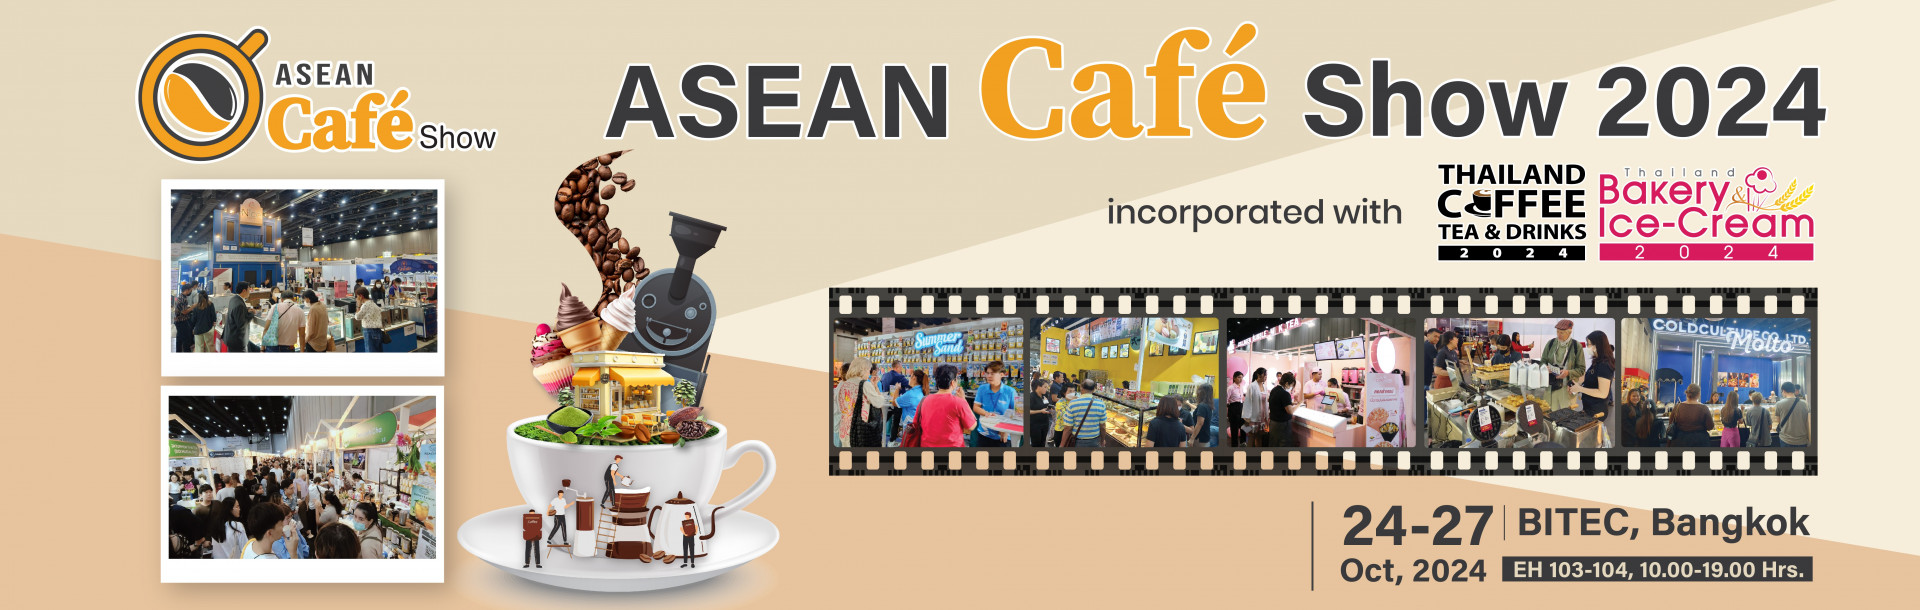 ASEAN Café Show 2024